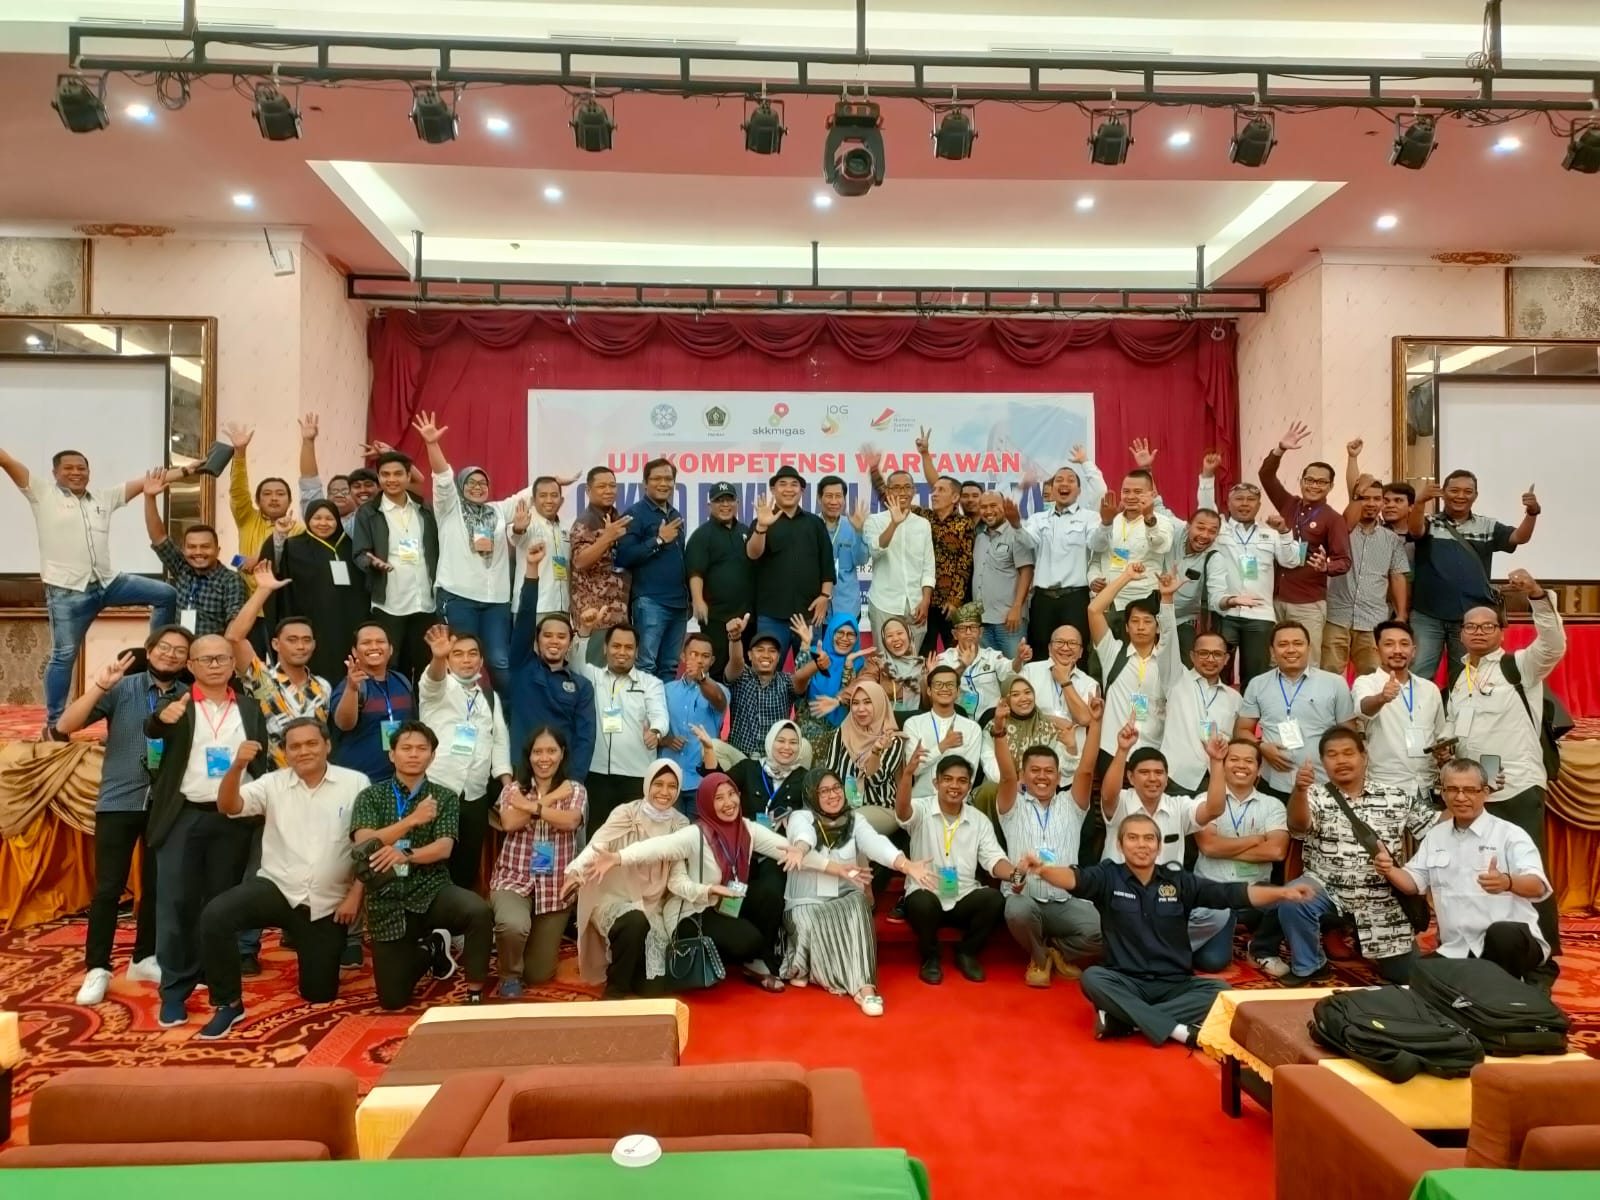 UKW PWI Riau Angkatan XIX-XX, Tujuh Wartawan Dinyatakan Belum Kompeten